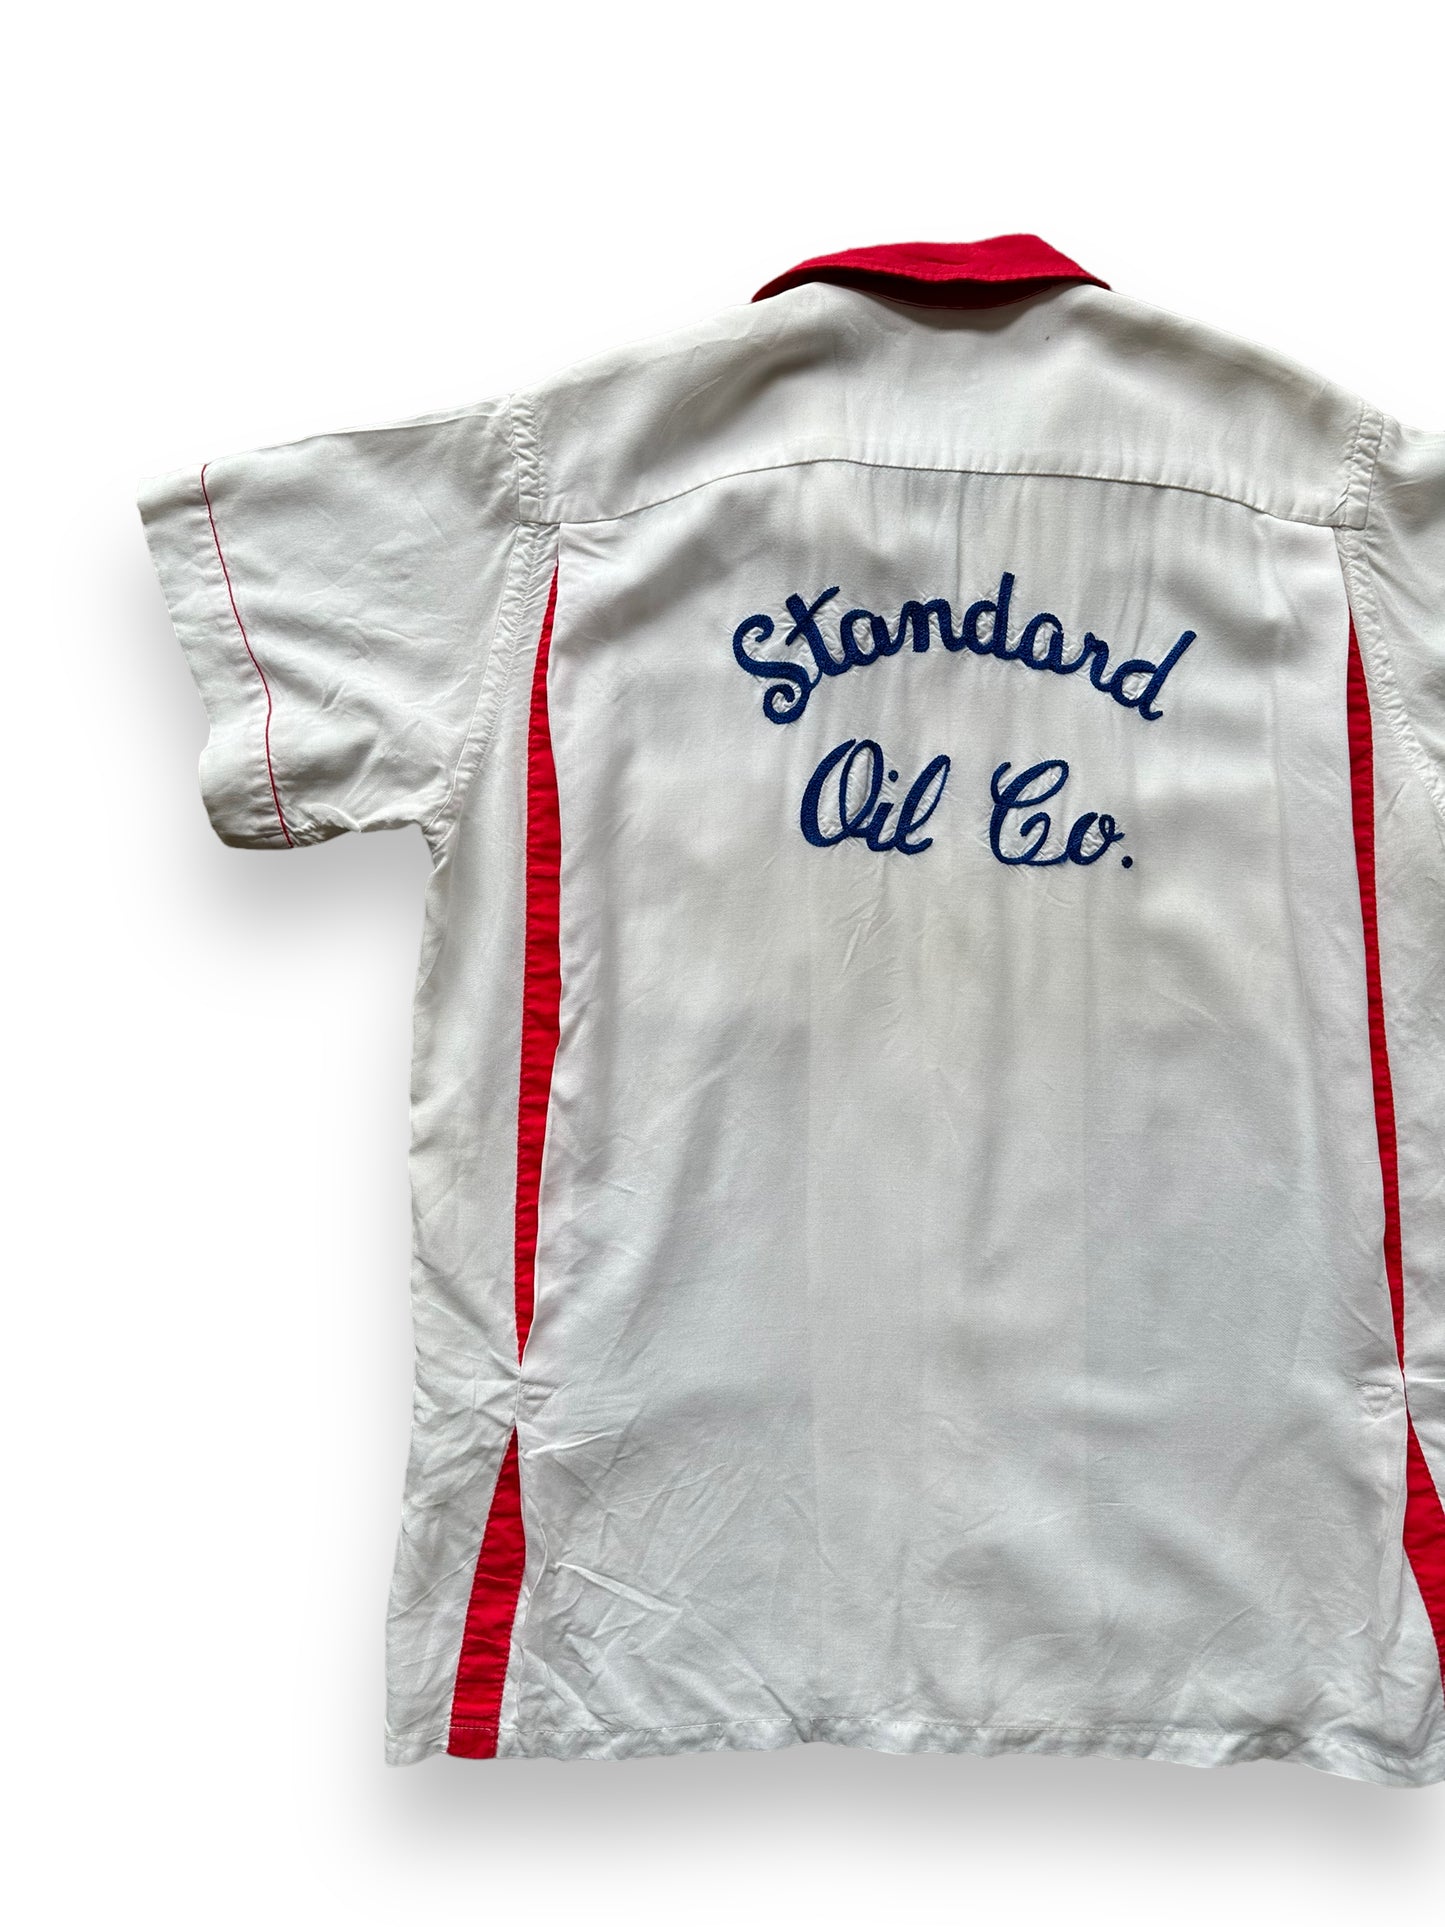 Back left of Vintage "Standard Oil Co." Chainstitched Bowling Shirt SZ M | Vintage Bowling Shirt Seattle | Barn Owl Vintage Seattle